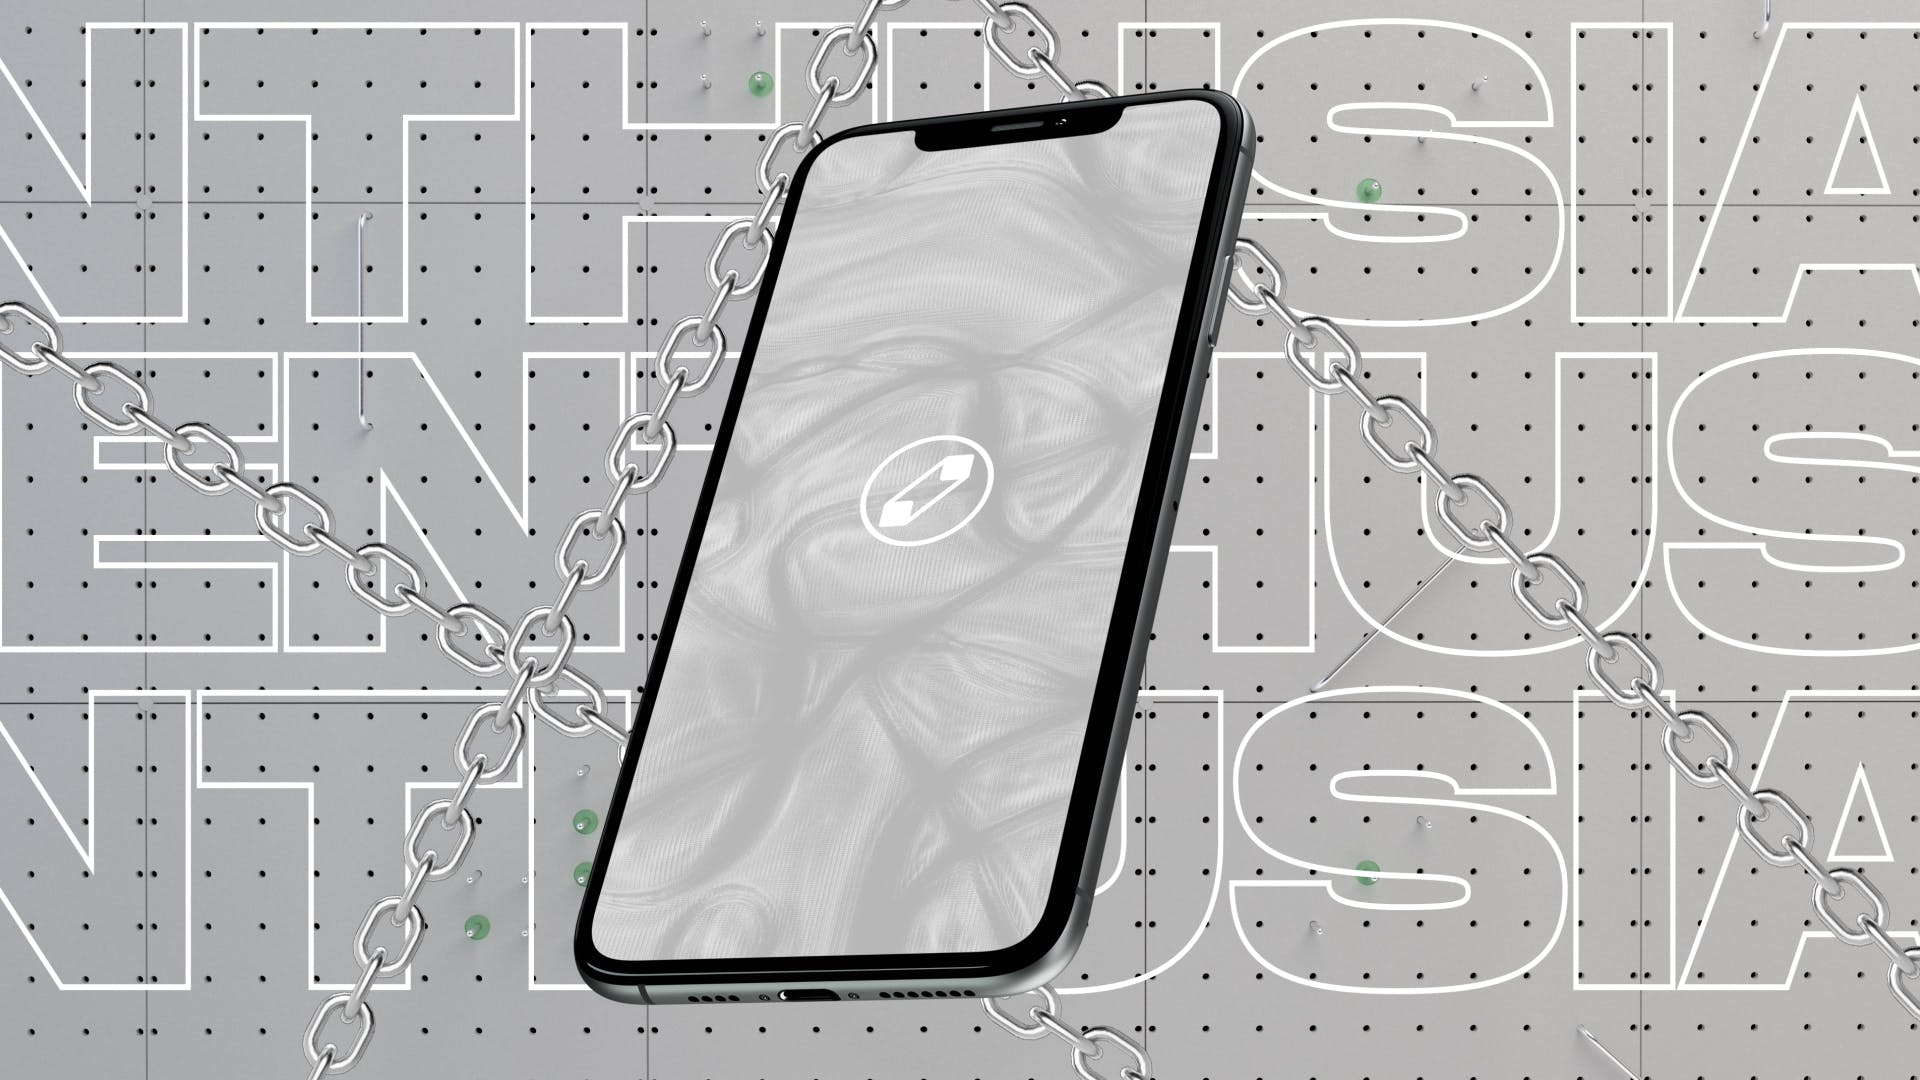 优雅时尚风格3D立体风格iPhone手机屏幕预览素材中国精选样机 10 Light Phone Mockups插图(9)